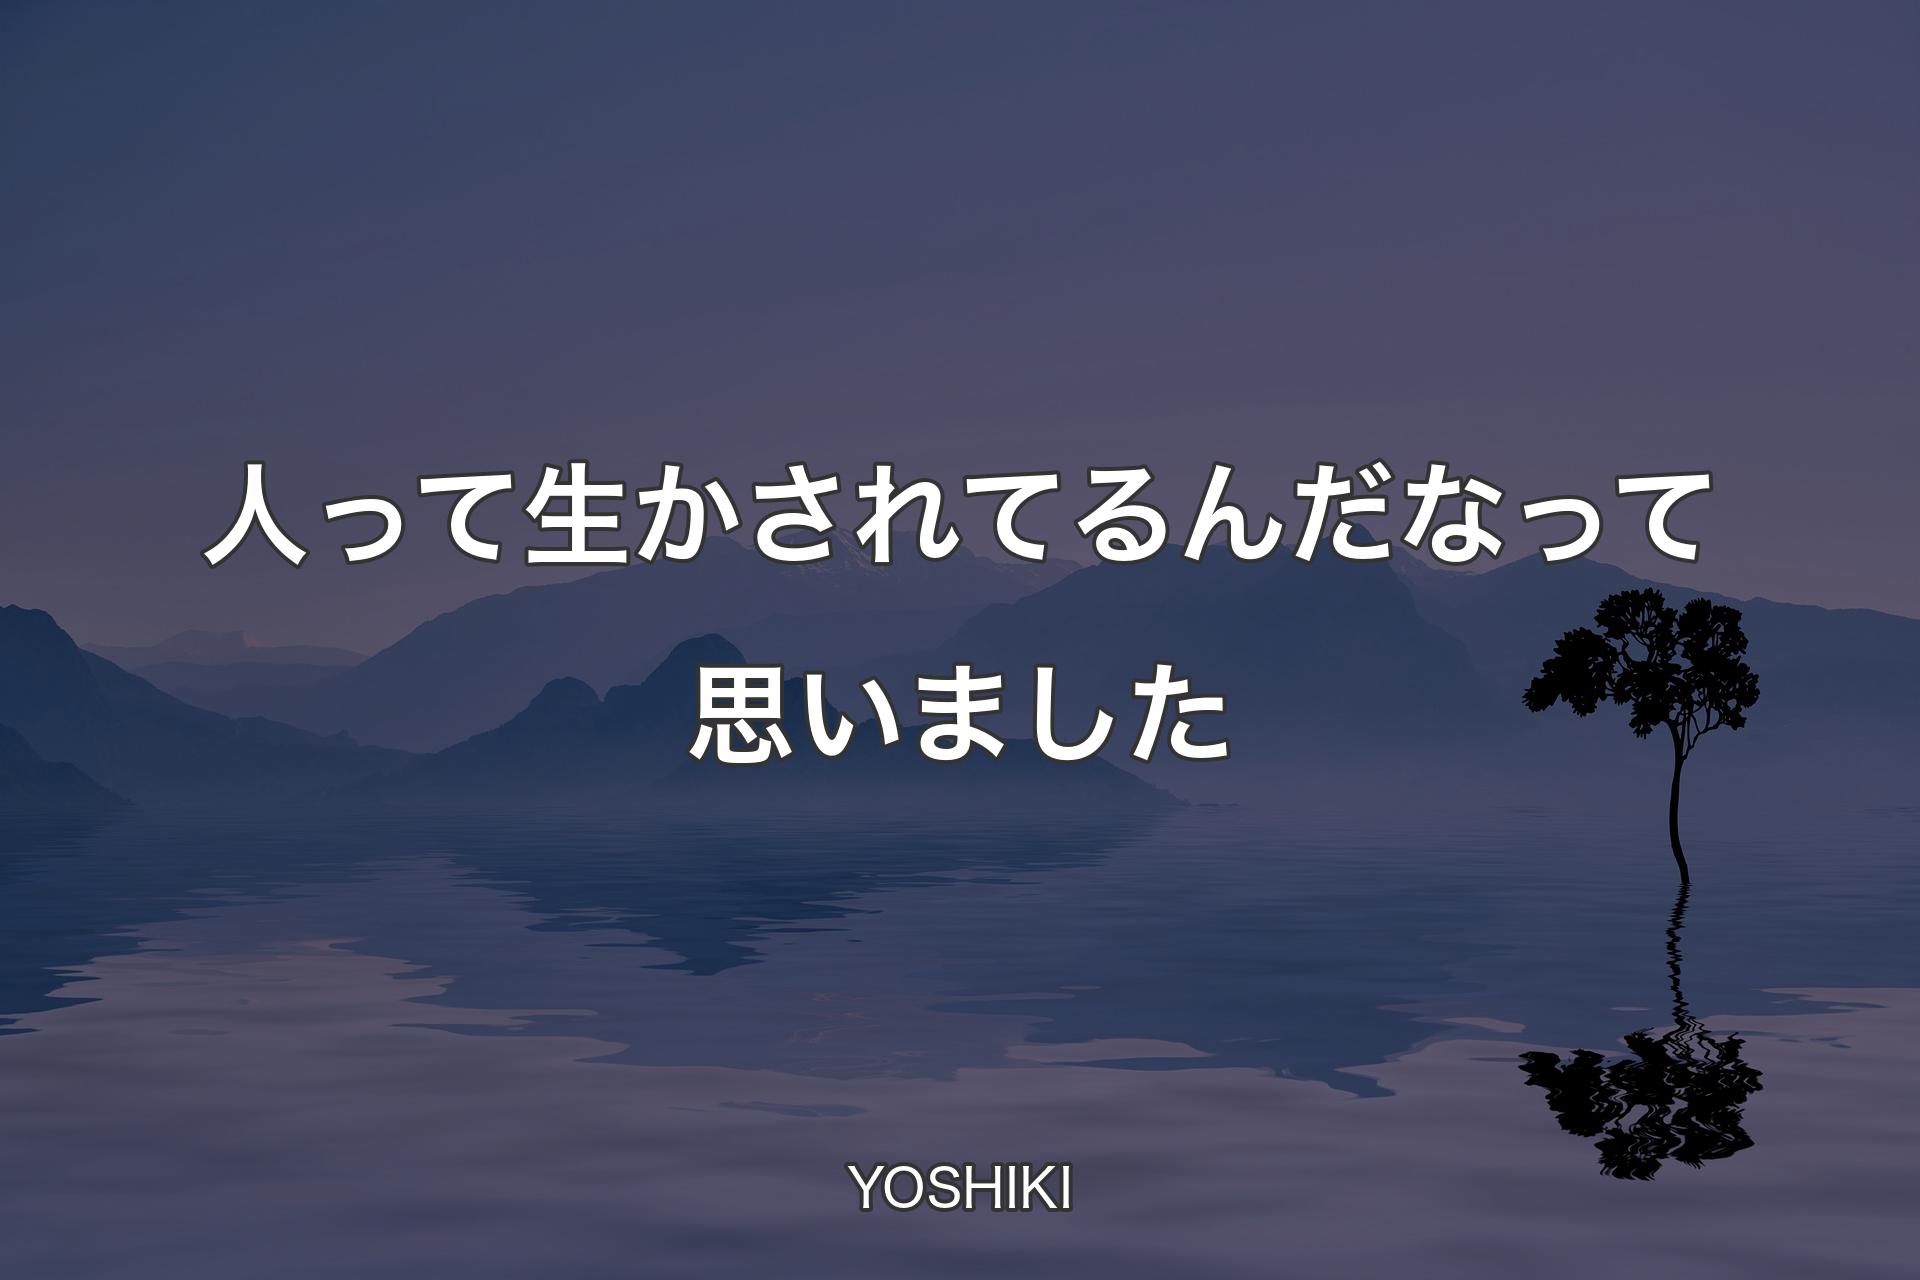 【背景4】人って生かされてるんだなって思いました - YOSHIKI